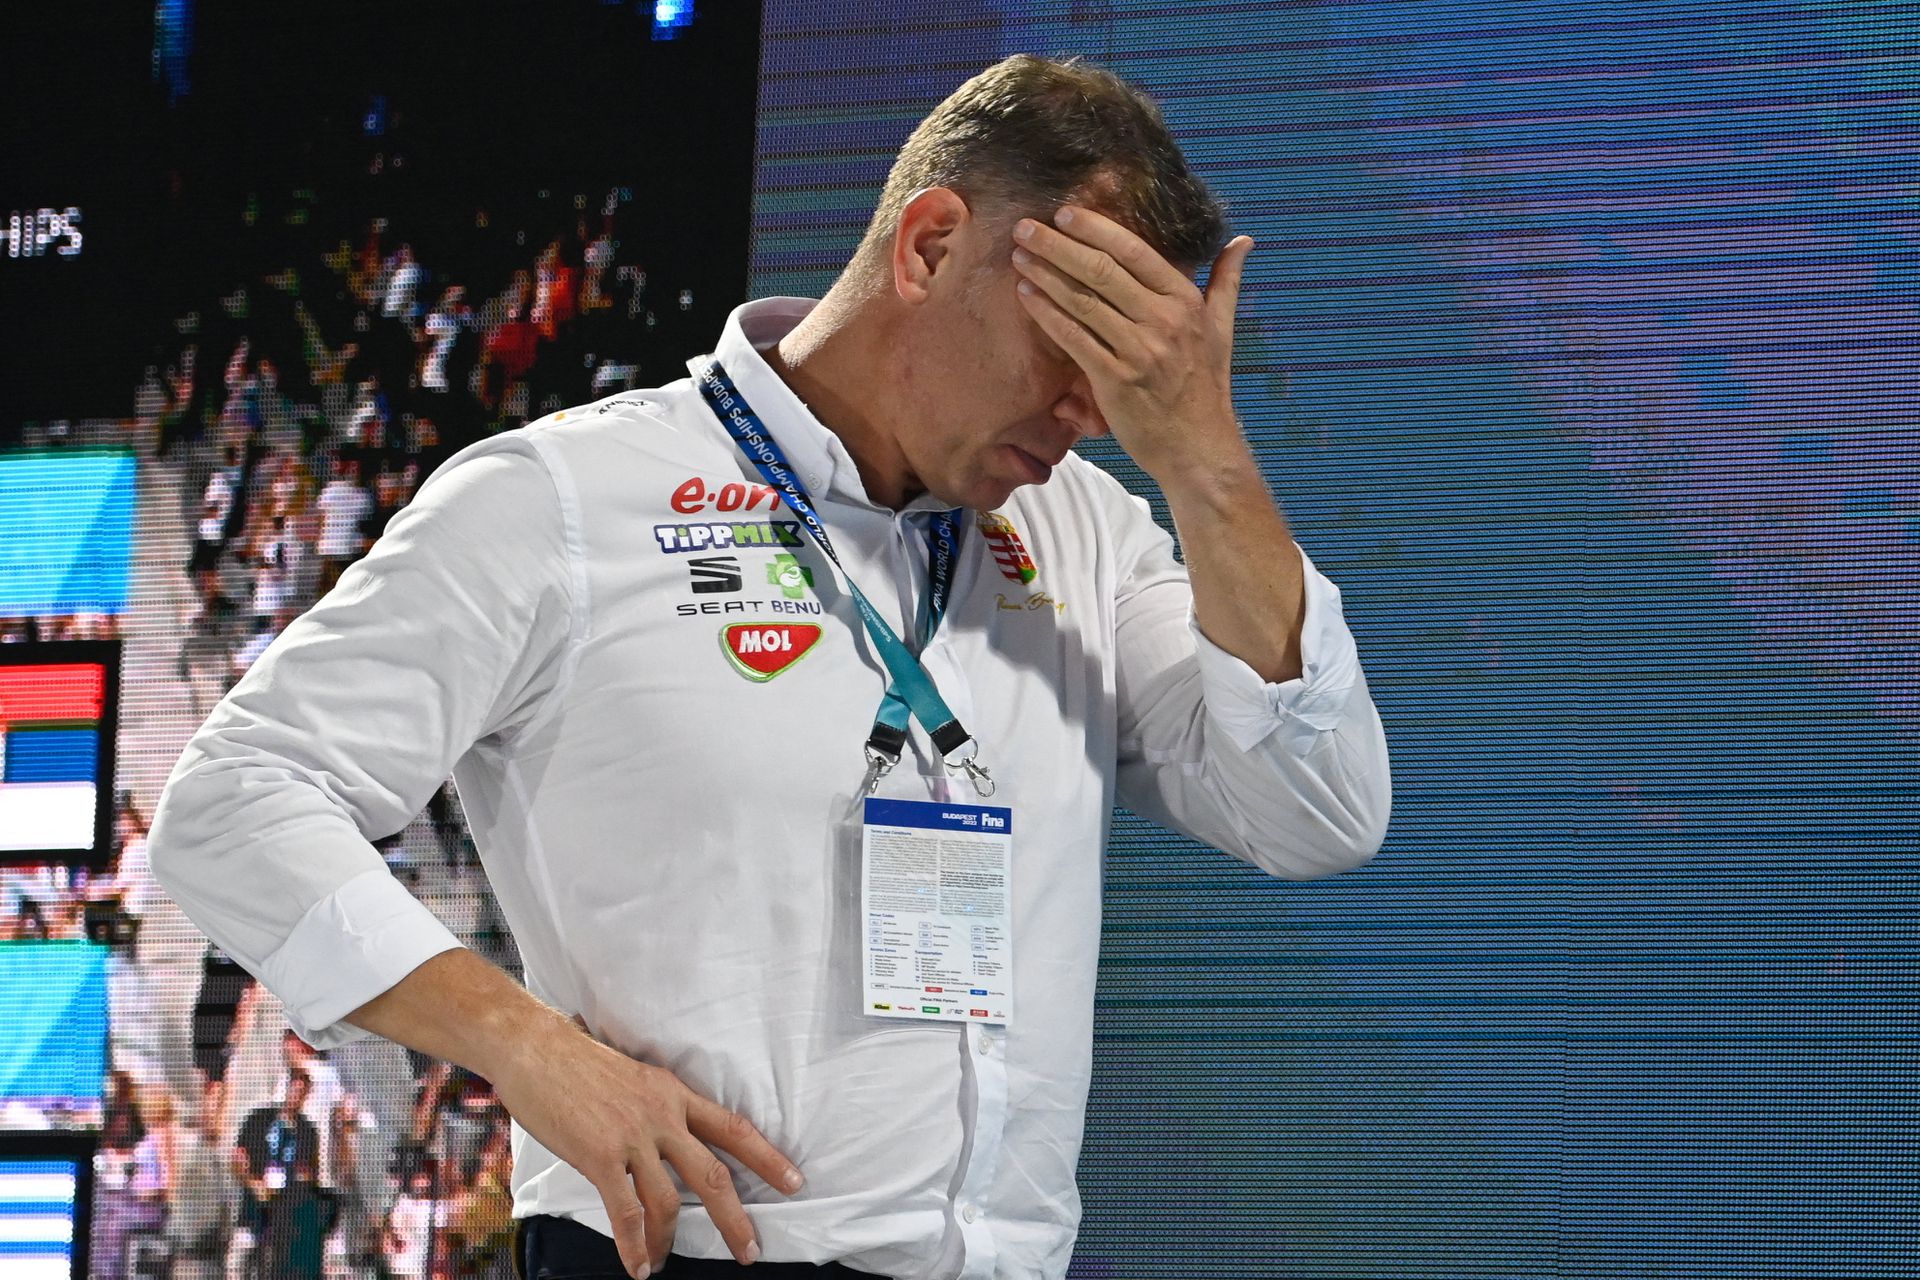 A nyári, hazai rendezésű világbajnokságon hatalmas csalódást jelentett a hetedik hely, Märcz Tamás pedig úgy érezte, megingott a belé vetett bizalom. Fotó: MTI/Koszticsák Szilárd